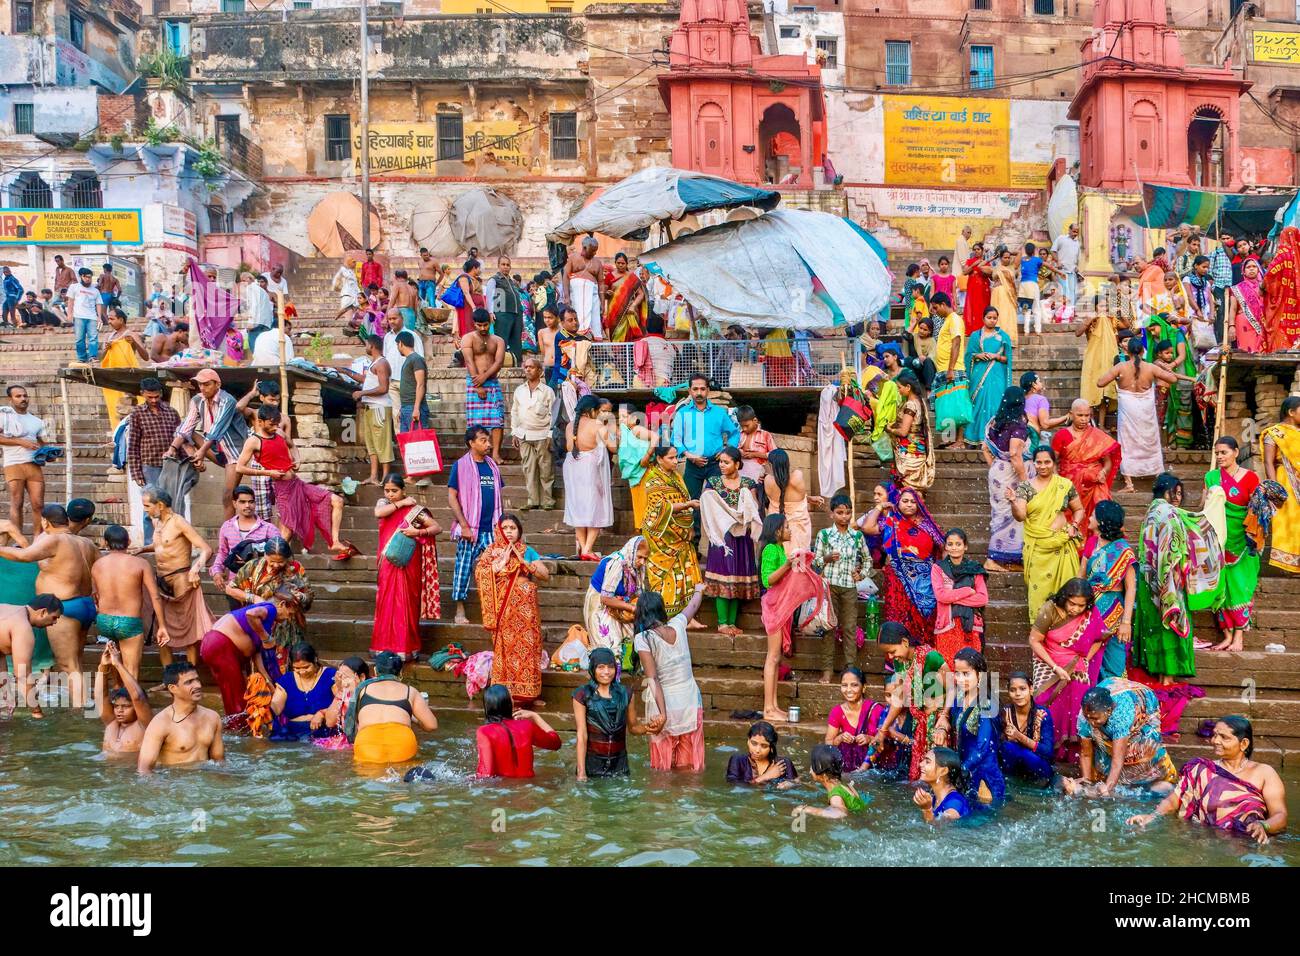 Varanasi, Indien - 11. November 2015. Indische religiöse Pilger stehen auf einem Ghat und baden im Ganges River, ein wichtiges Ritual im Hinduismus. Stockfoto